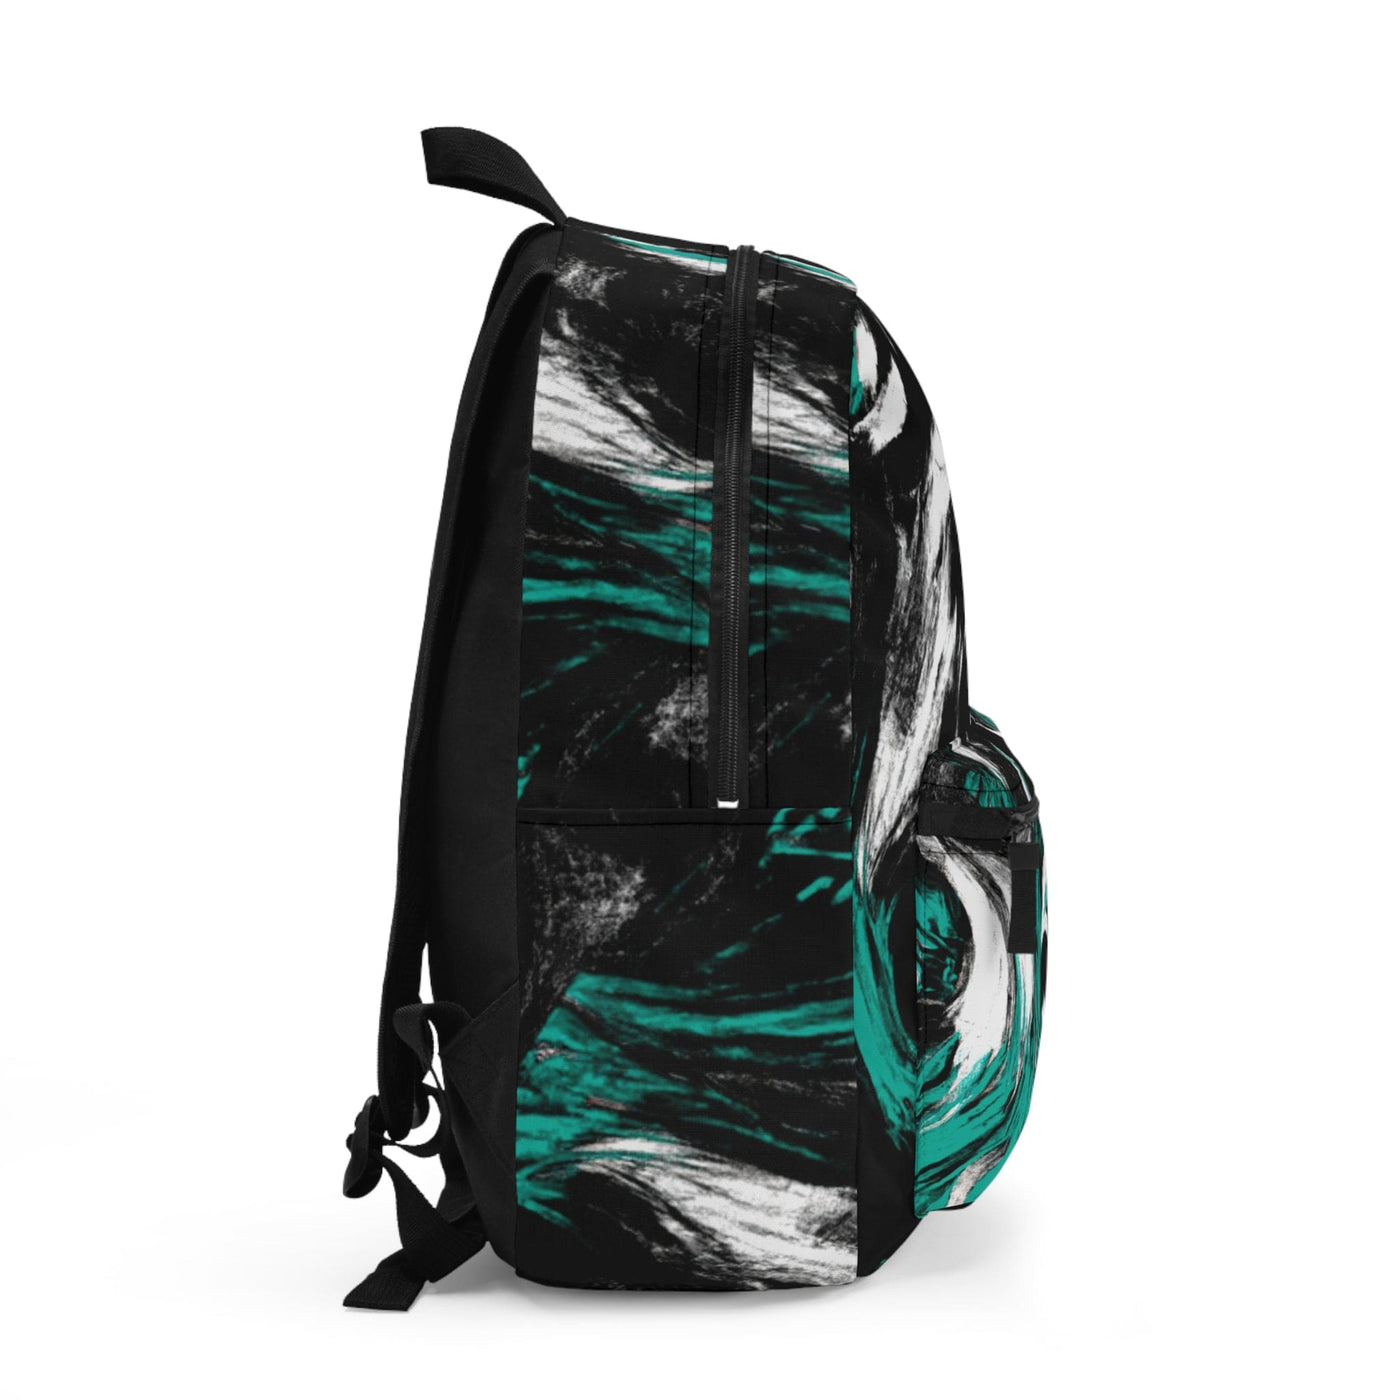 Backpack Work/school/leisure - Waterproof Black Green White Abstract Pattern